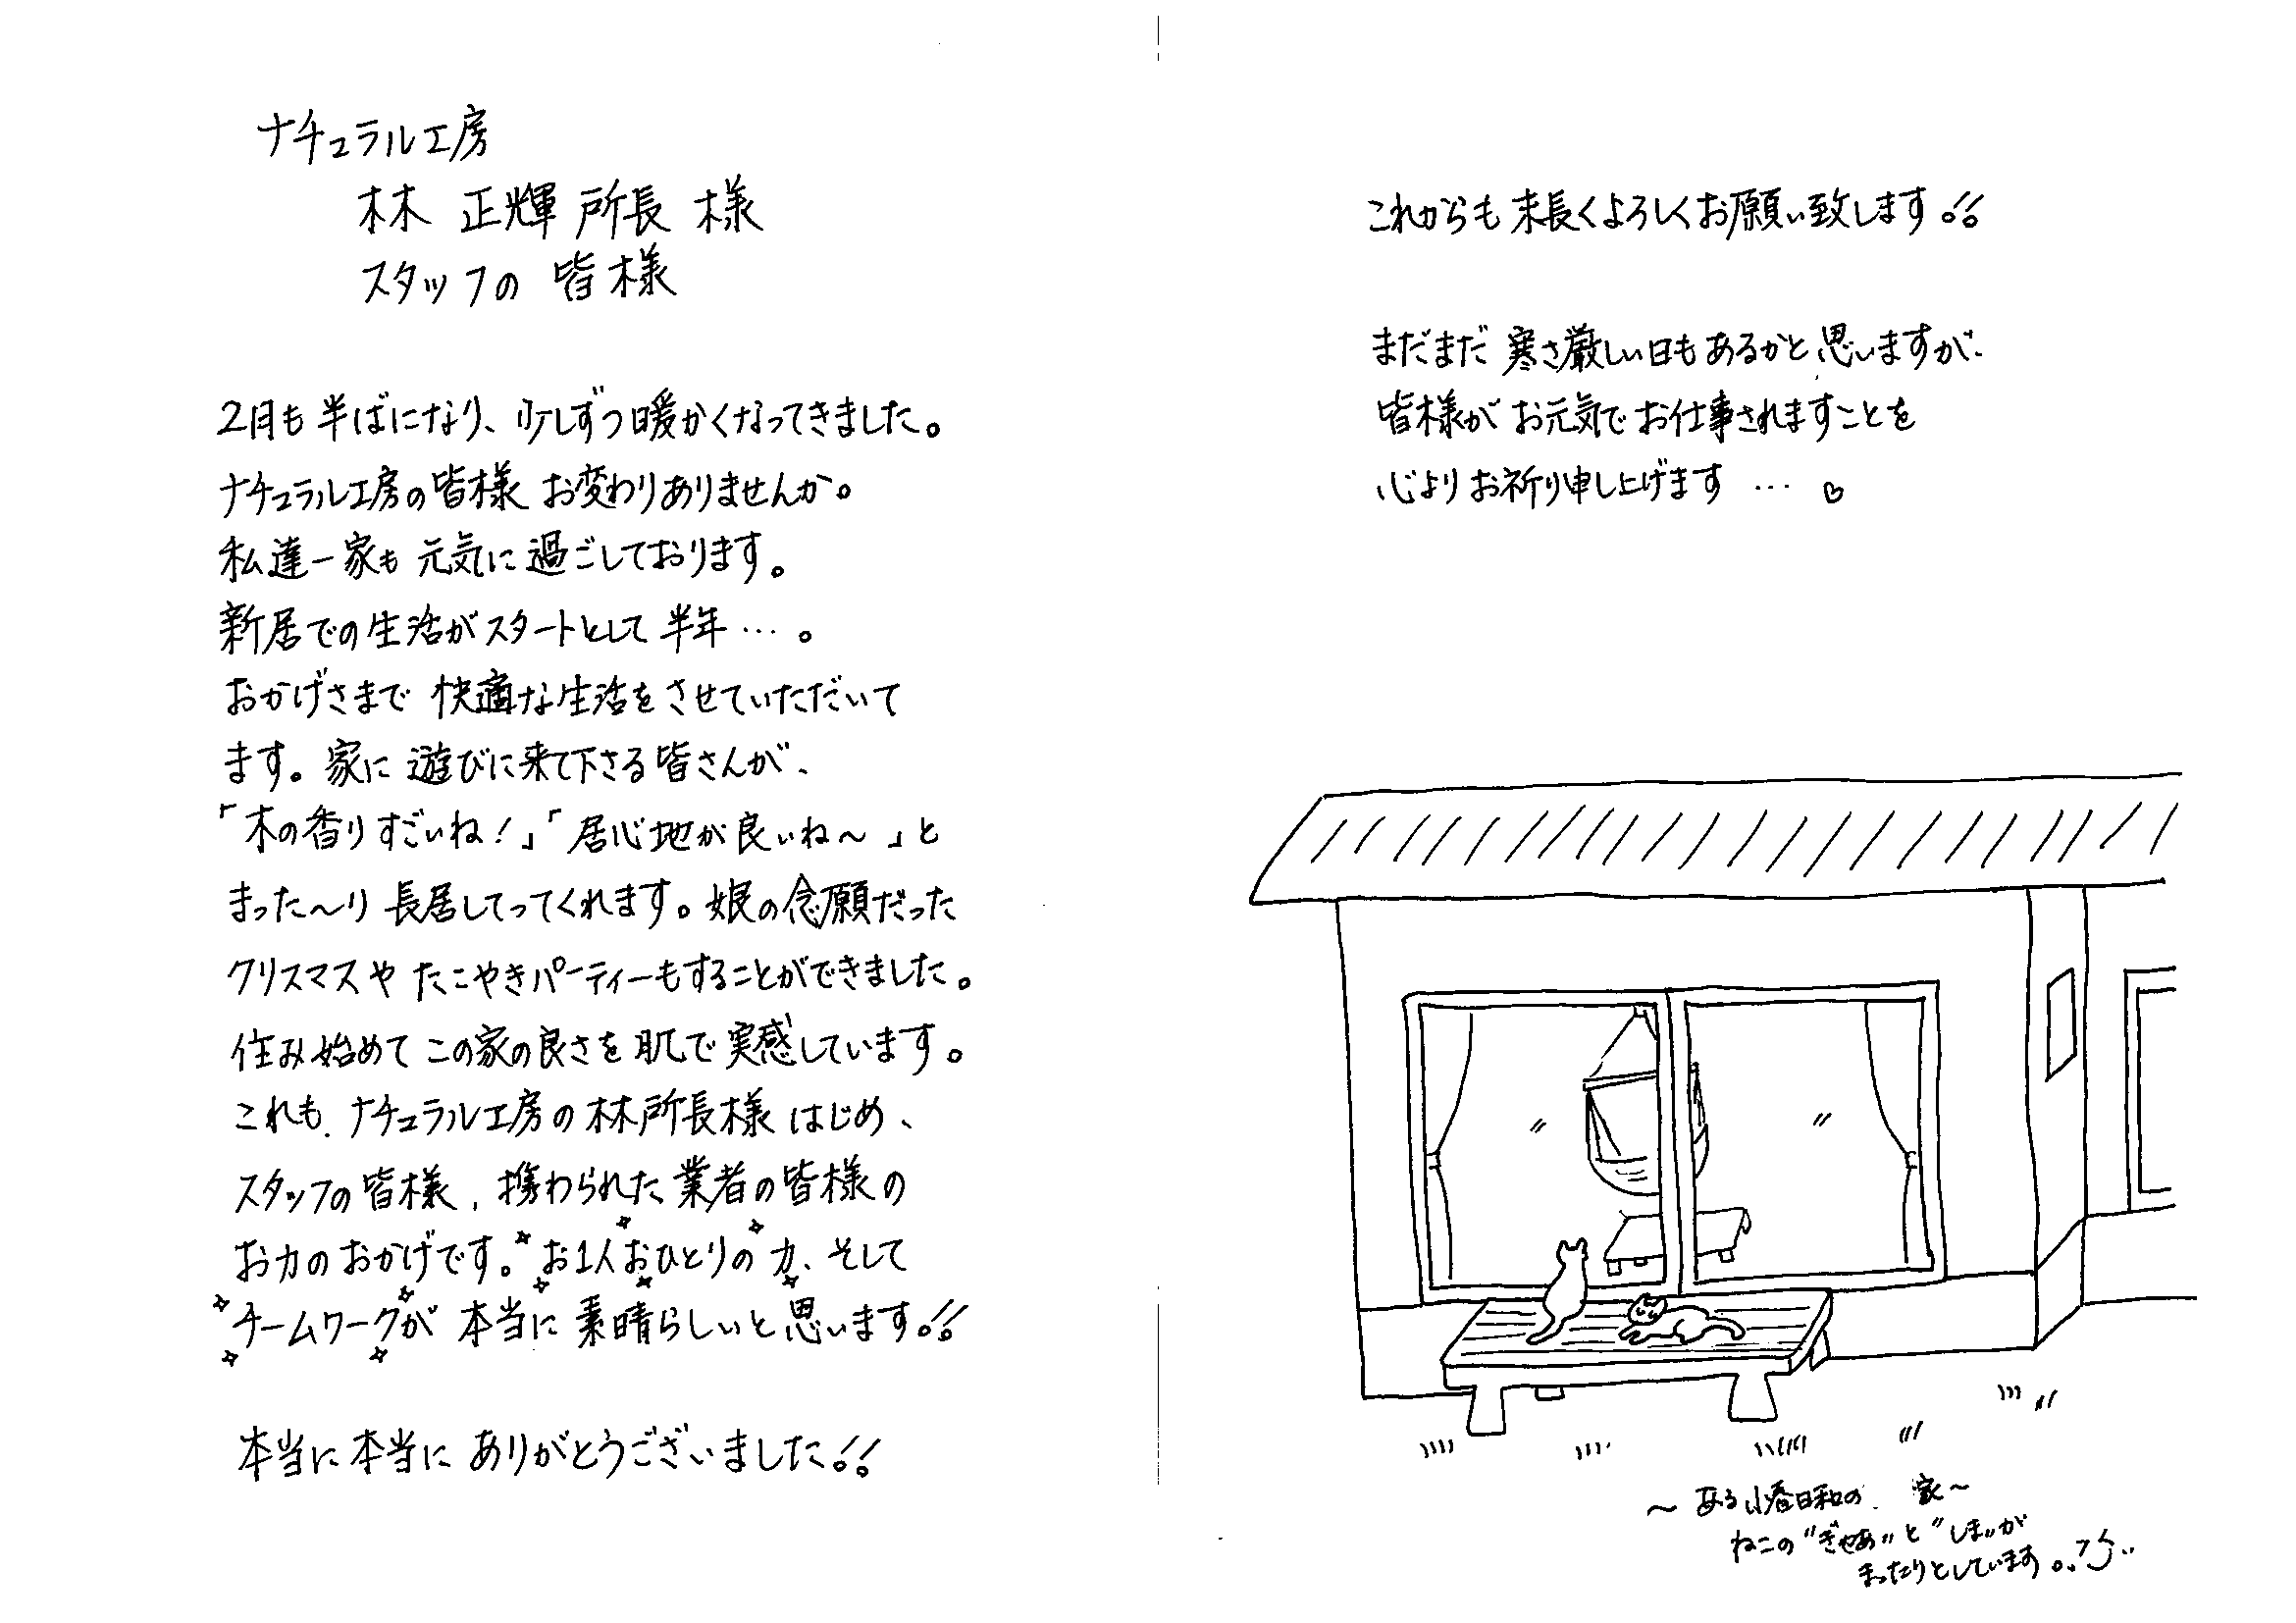 http://n-ko.jp/staffblog/letter.gif